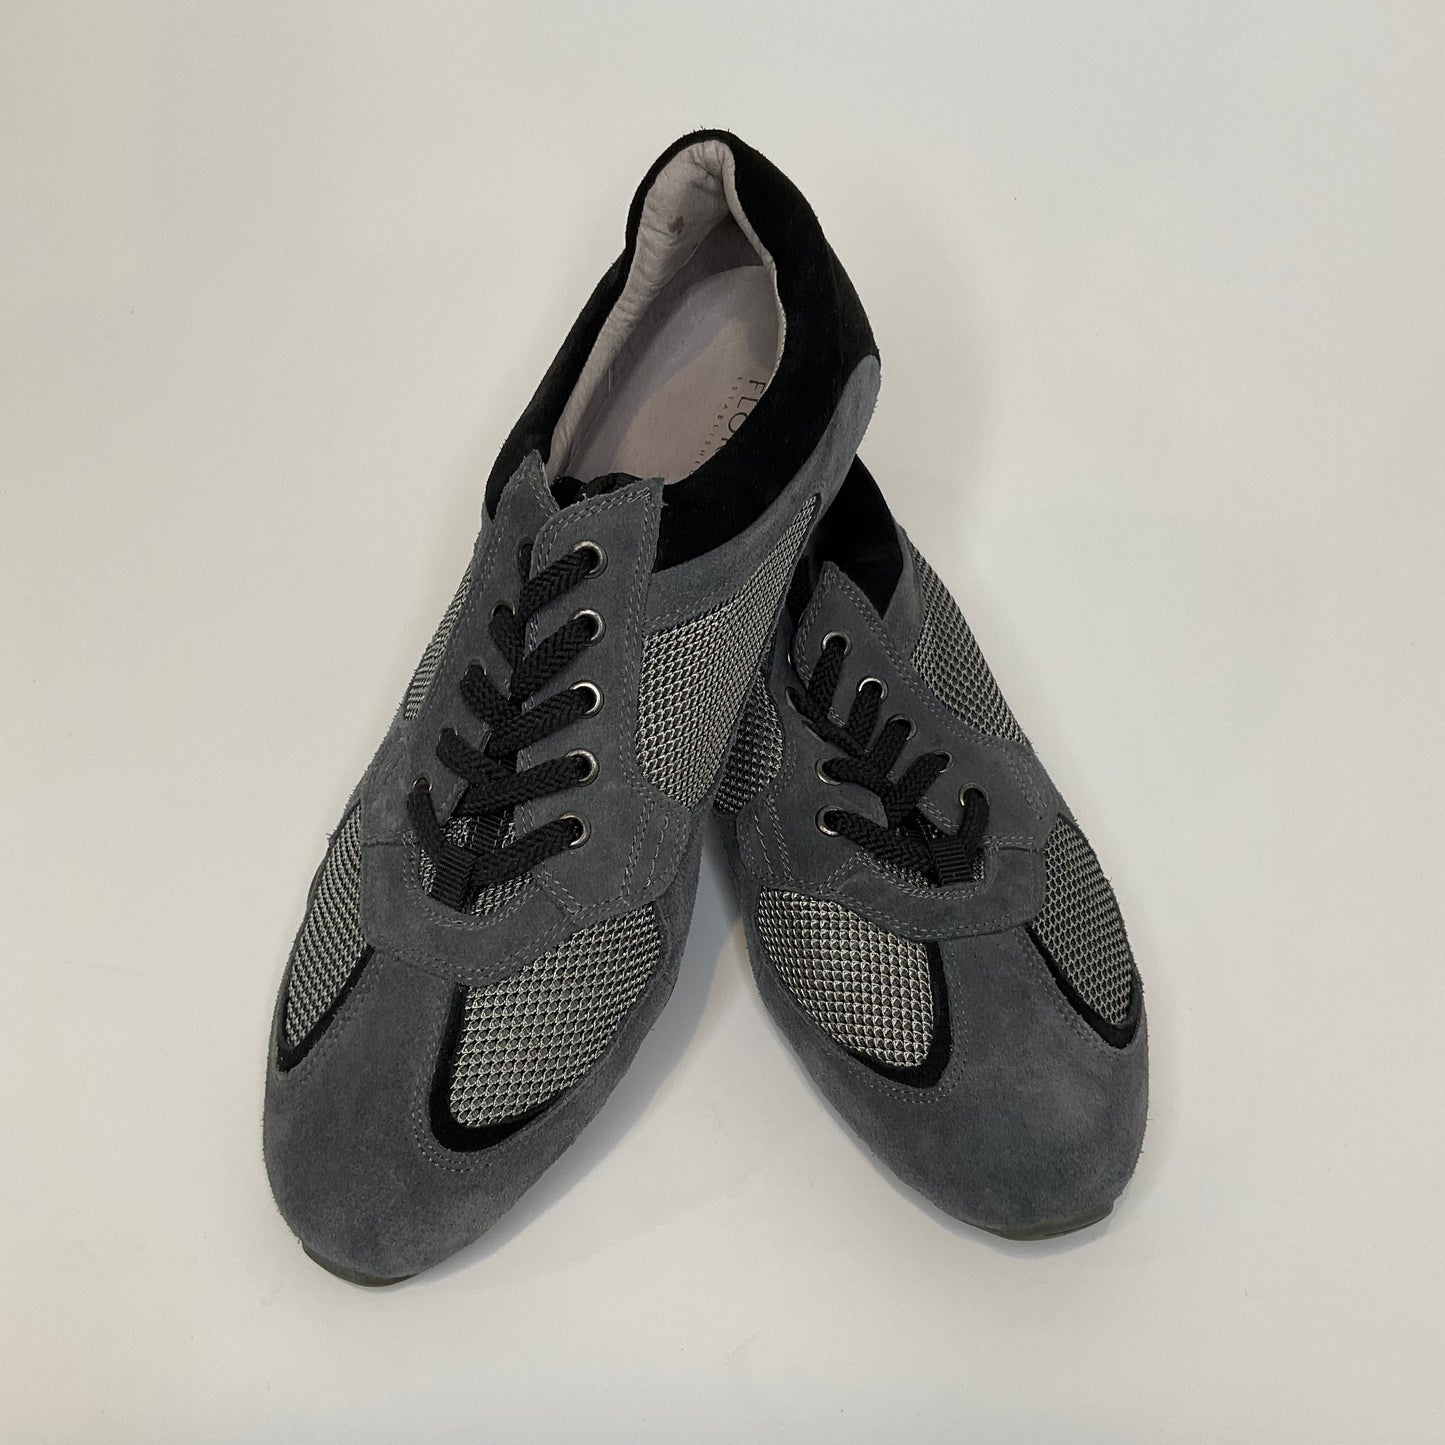 Florsheim - Casual Shoes - Size 11